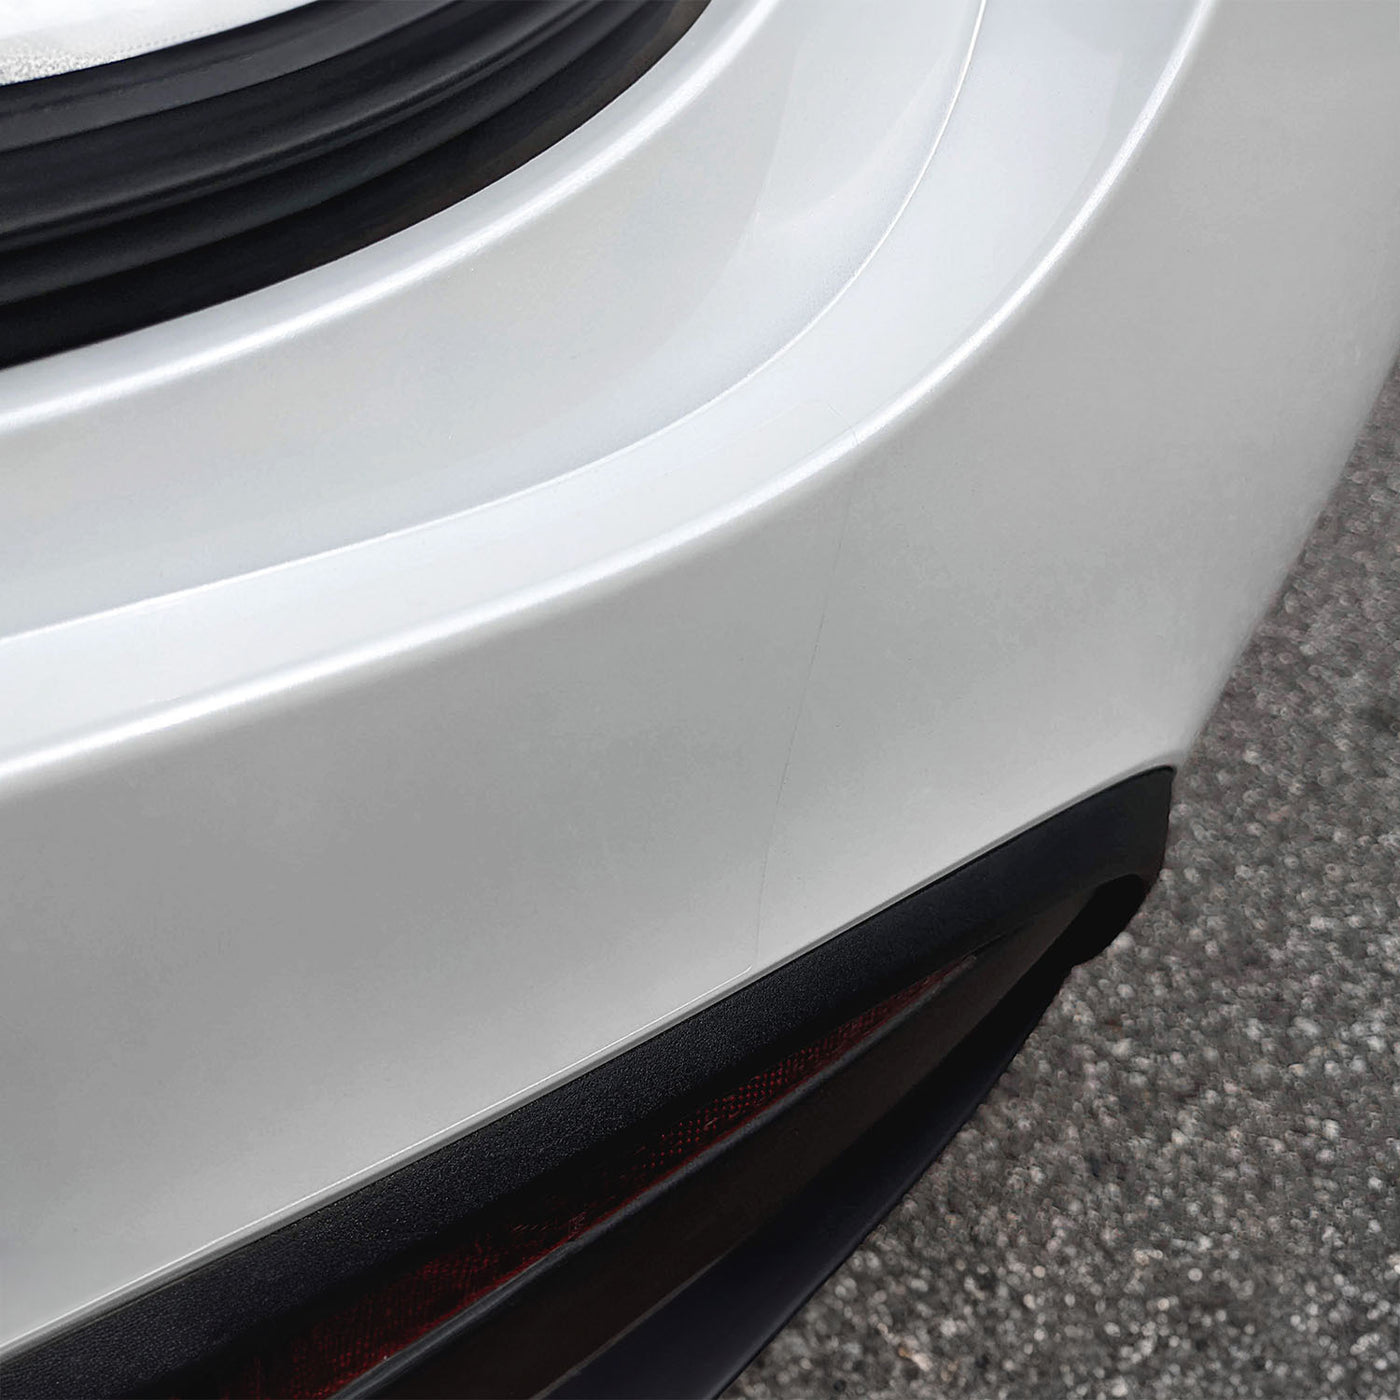 model y trunk bumper protector #ultrasonic-sensors-on-bumper_no-sensors